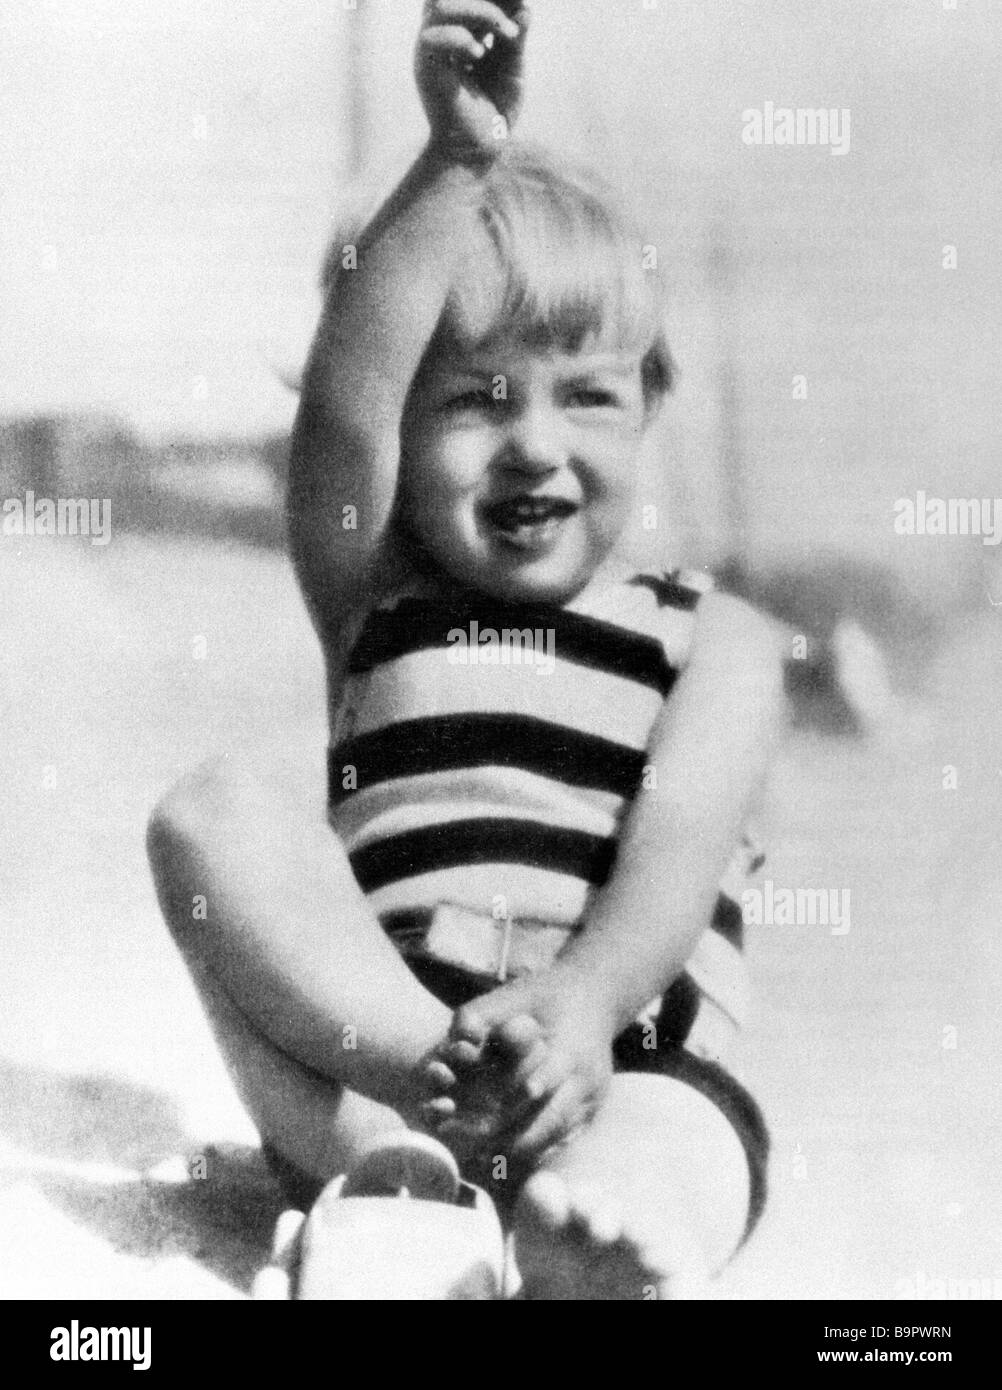 Us Schauspielerin Marilyn Monroe In Der Kindheit Stockfotografie Alamy 